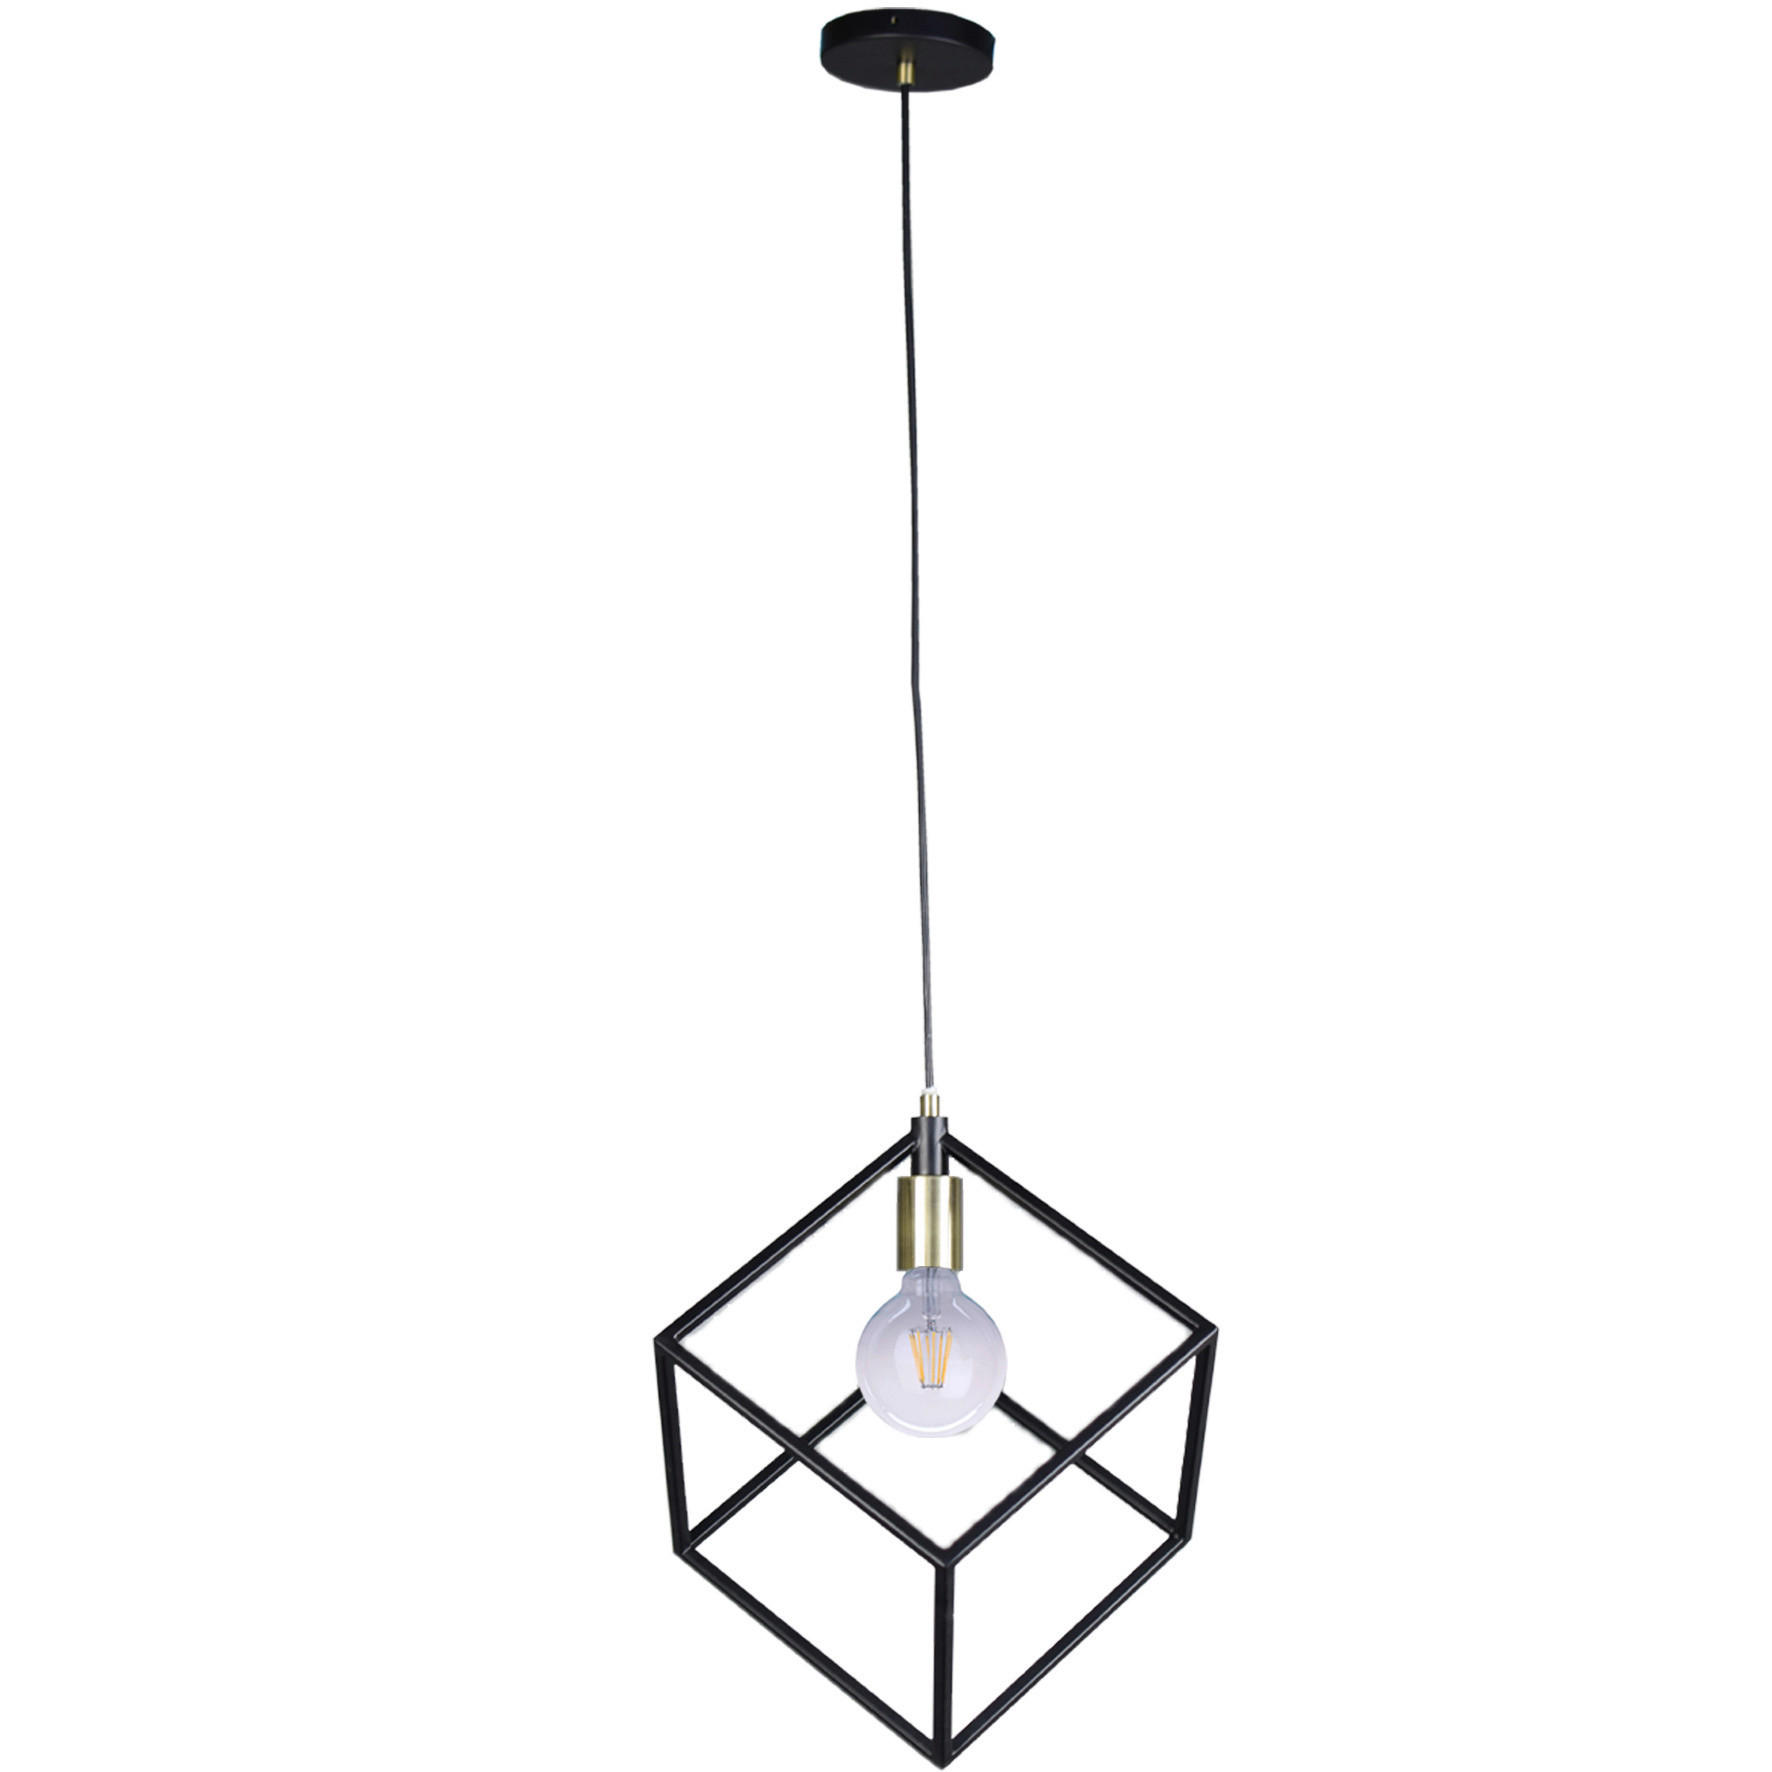 ZÁVESNÁ LAMPA, E27/60 W, 25/150 cm  - čierna, Design, kov (25/150cm) - Marama